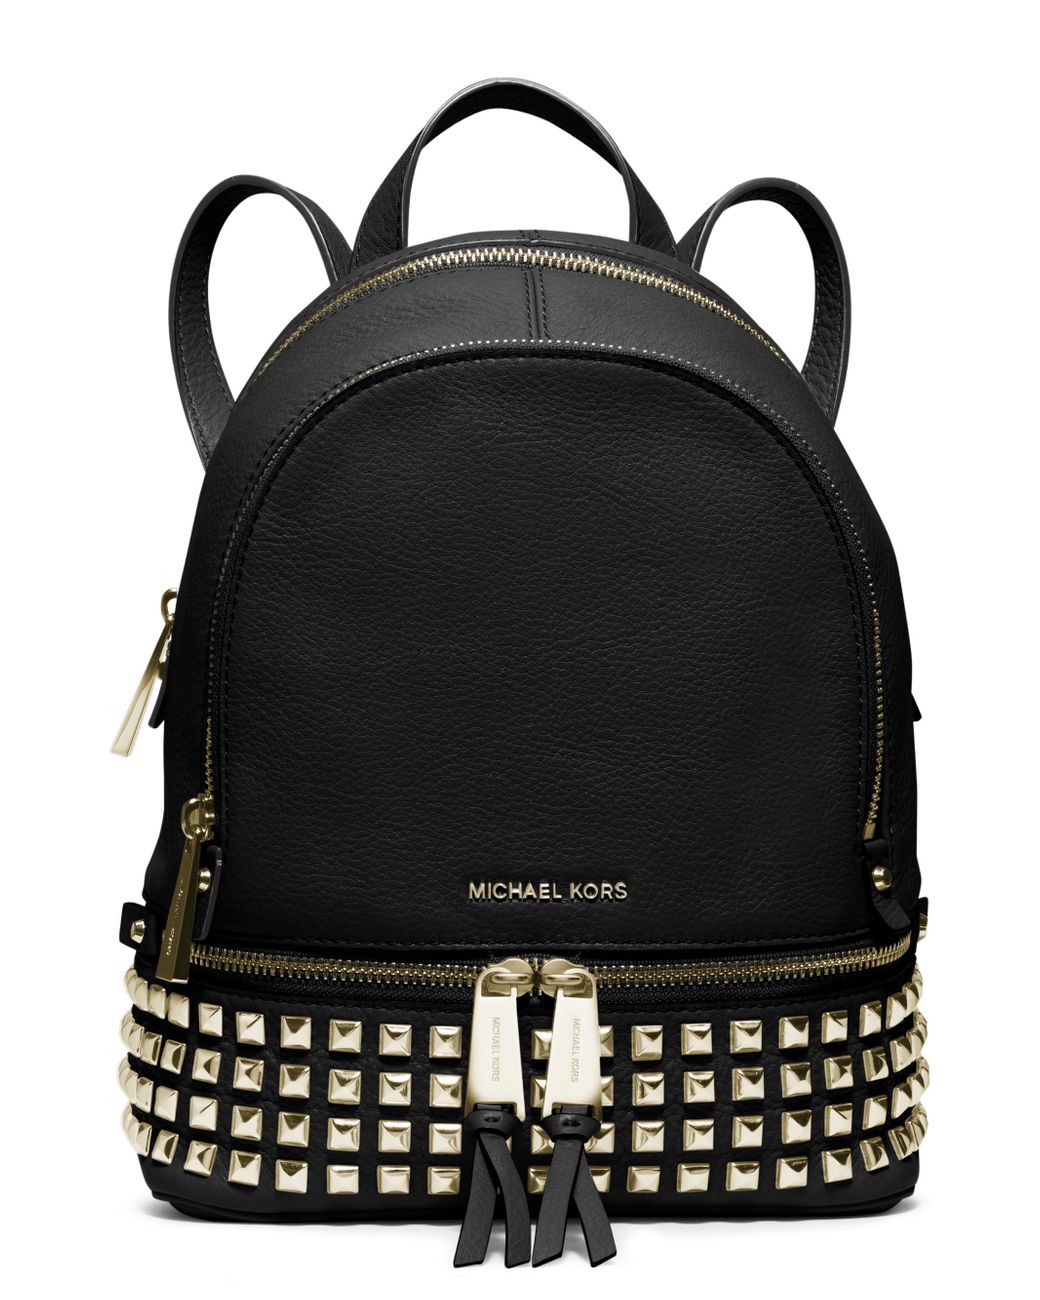 MICHAEL KORS Rhea Zip Backpack Black Color  Black backpack, Black leather  backpack, Michael kors rhea backpack